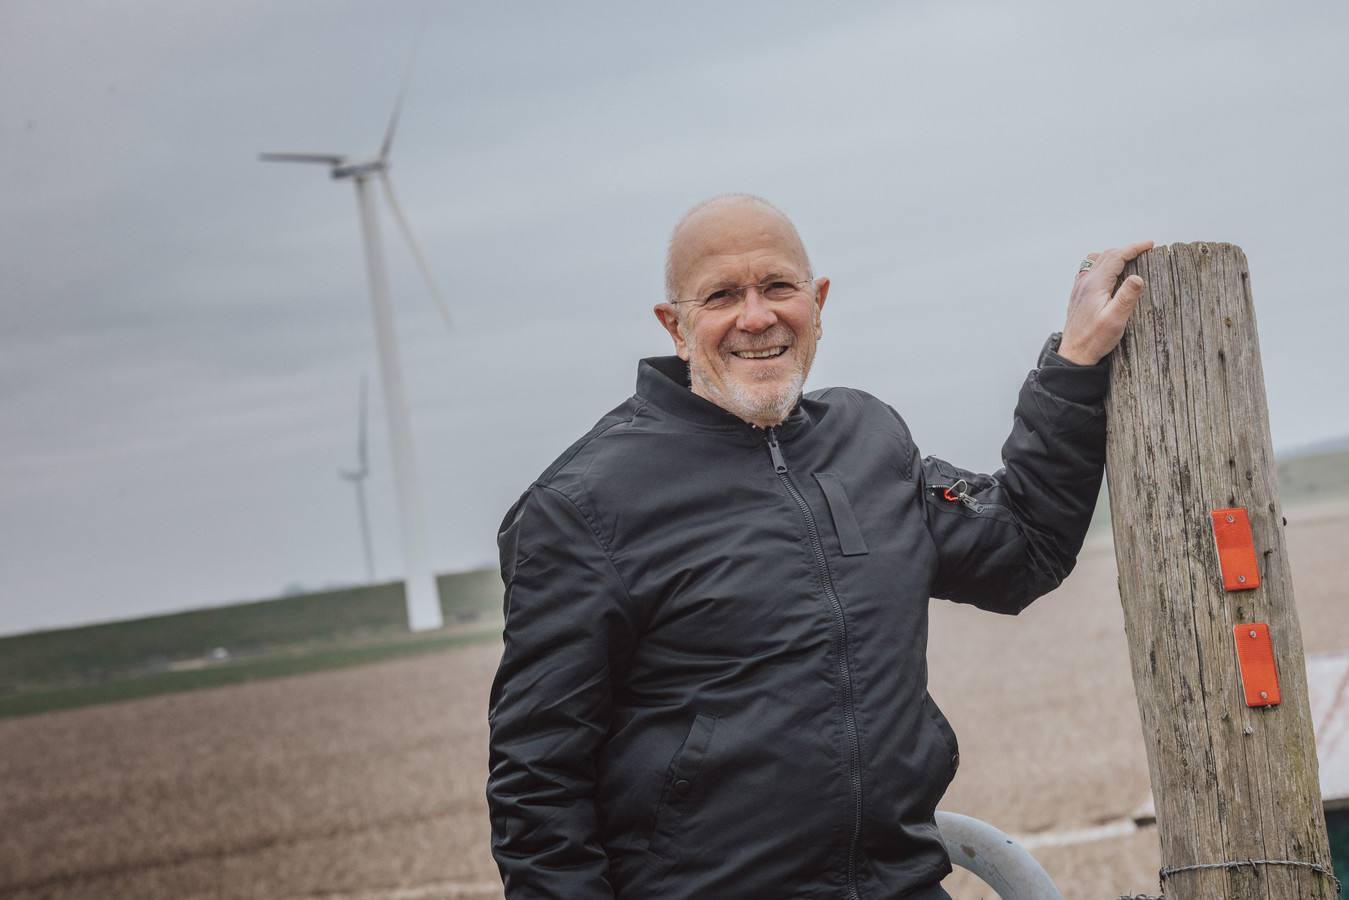 Leon Aanraad is de voorzitter van werkgroep Leefbaarheid Dinteloord, die jarenlang streed tegen de vervanging van vier kleine windmolens voor flink grotere exemplaren.